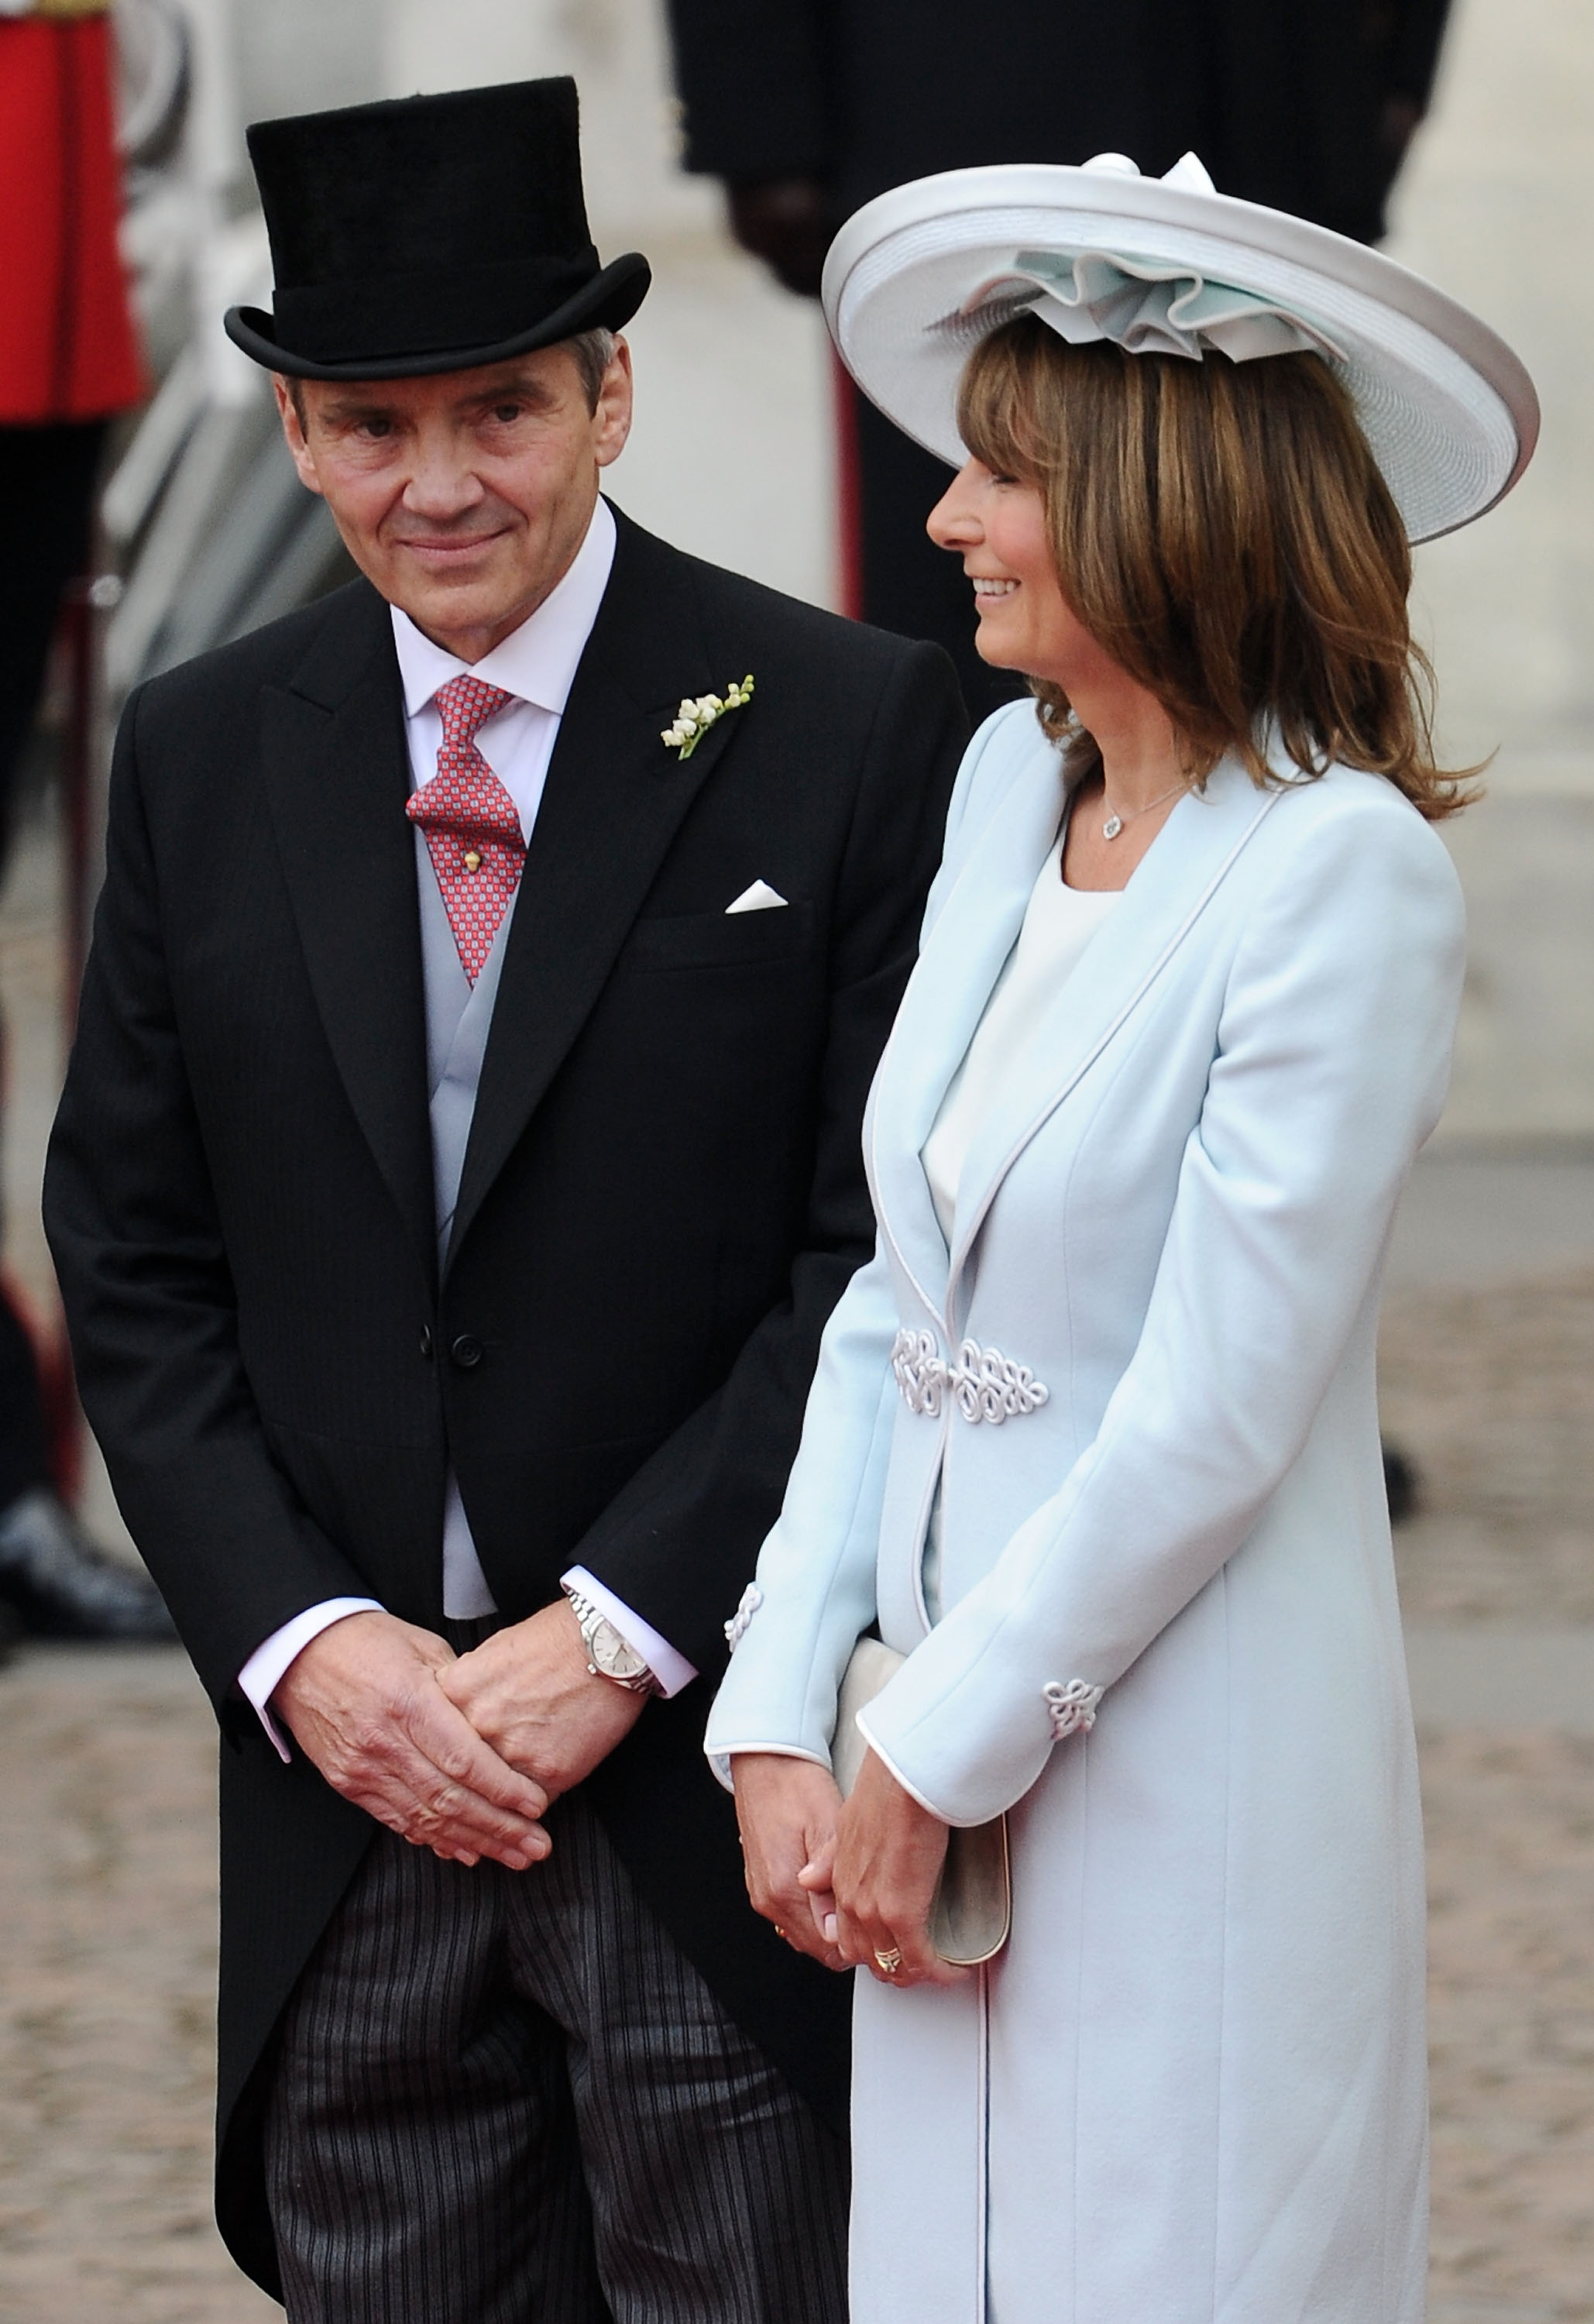 Michael Middleton und Carole Middleton verlassen Westminster Abbey nach der königlichen Hochzeit von Prinz William und Catherine Middleton in London, England, am 29. April 2011. | Quelle: Getty Images